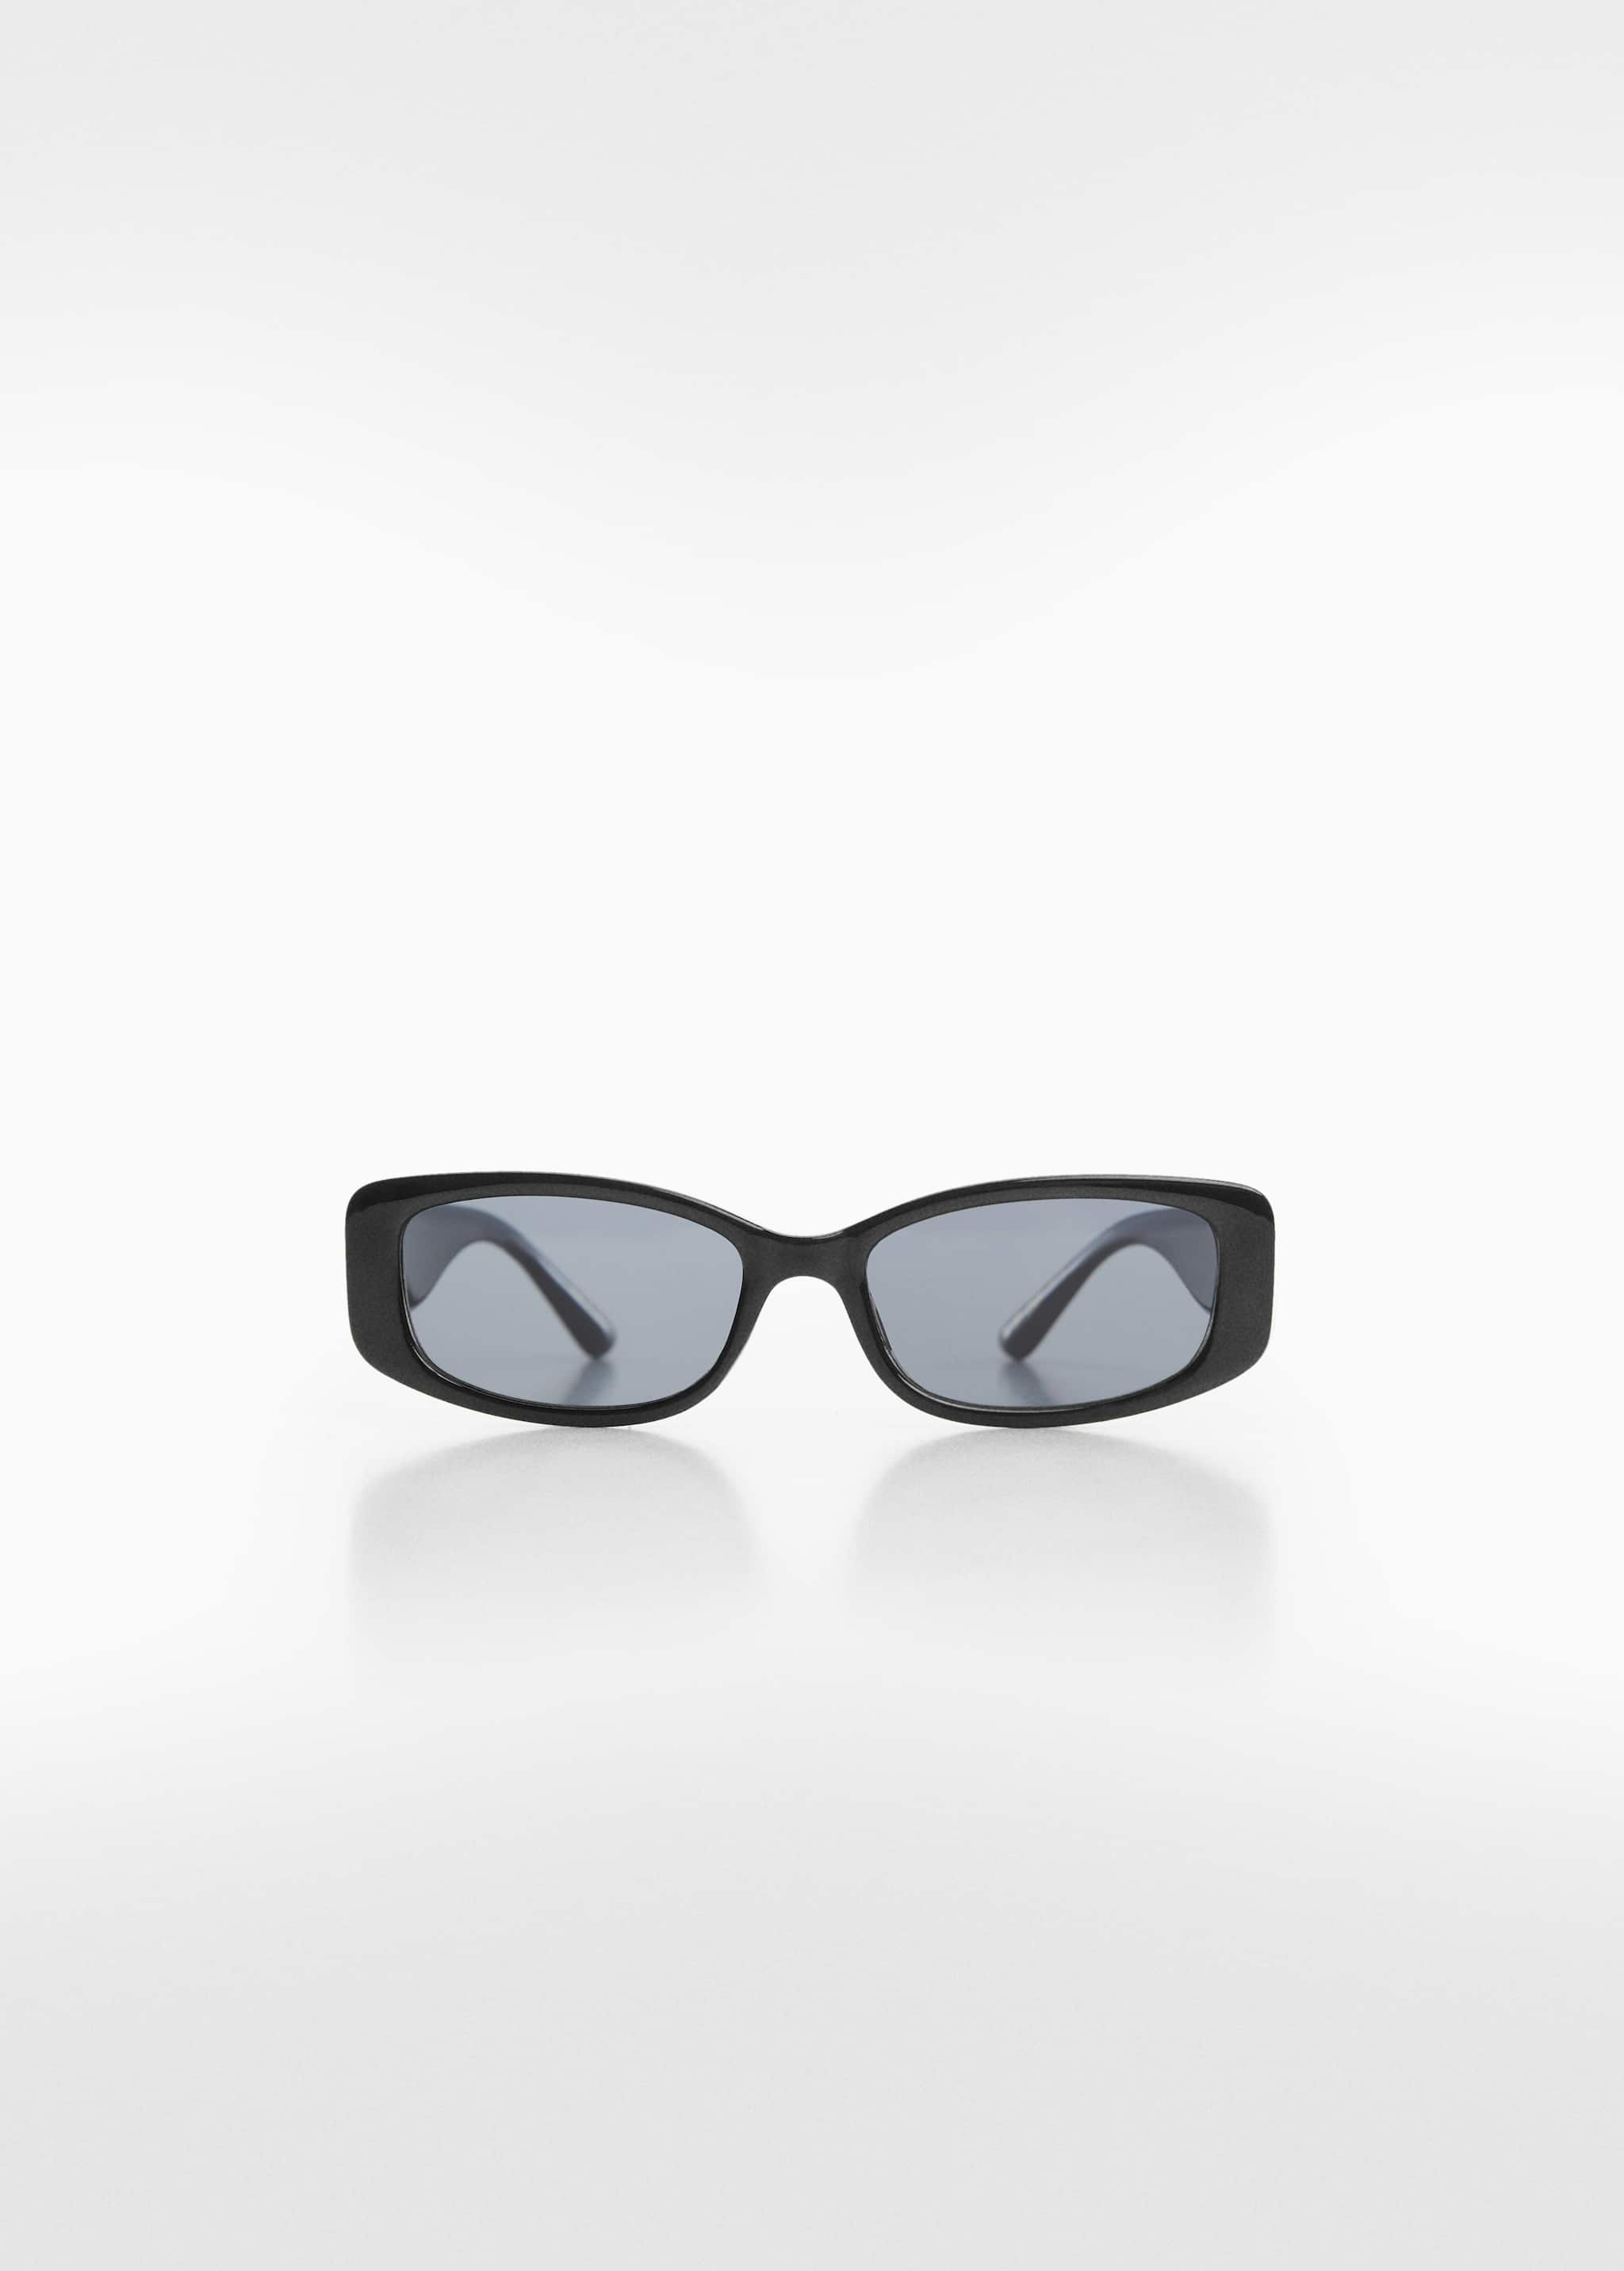 Gafas de sol rectangulares - Artículo sin modelo